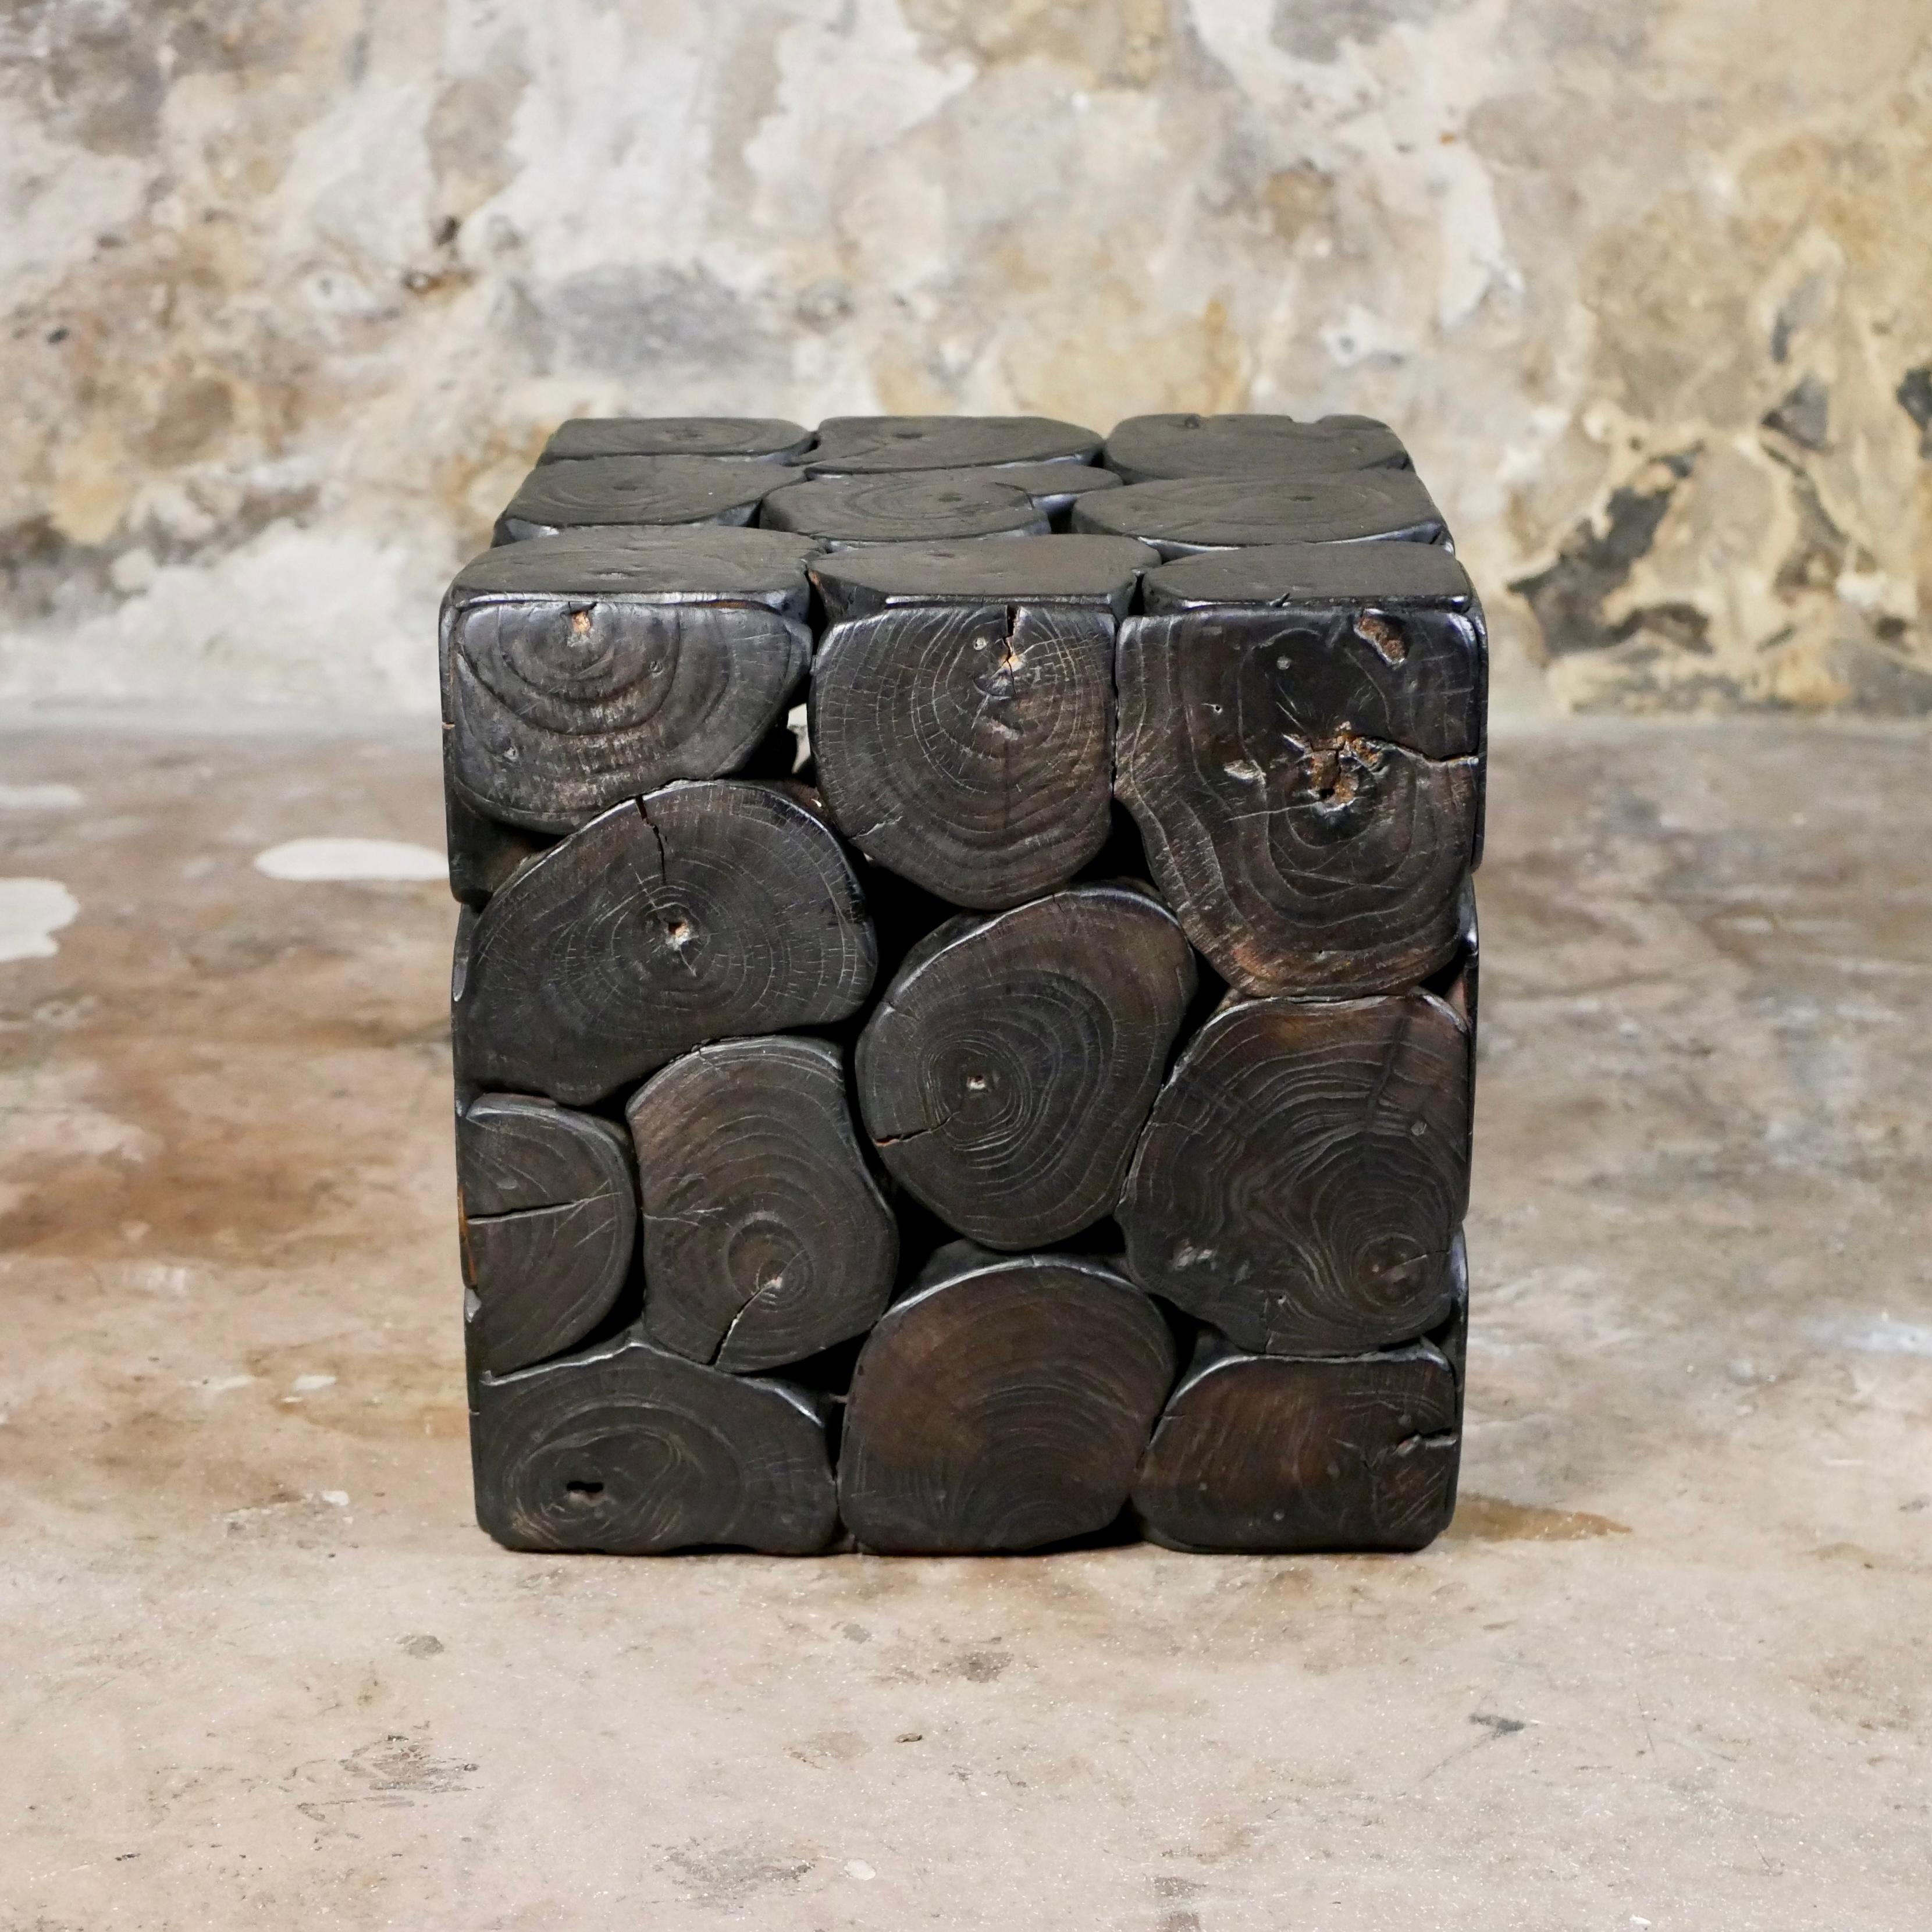 Schöne Beistelltisch oder Hocker, quadratische Form mit schwarzen Holzstämmen Stücke gemacht.
Superstabil und sehr elegant in Schwarz.
Anonymes französisches Werk aus den 1980er Jahren.
Abmessungen: 40 cm für jede Seite